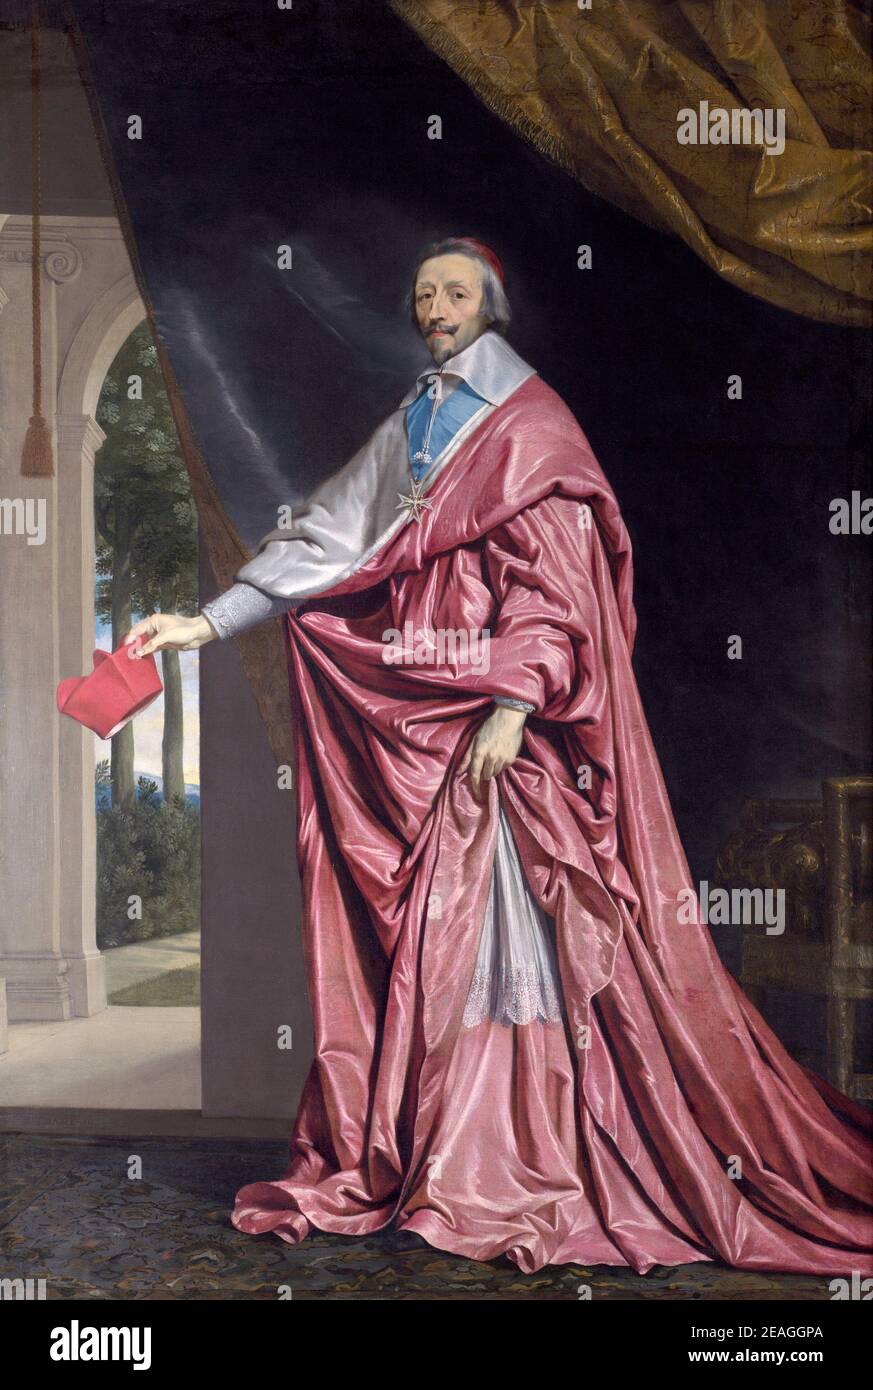 Kardinal Richelieu, Kardinal Richelieu, Armand Jean du Plessis, Herzog von Richelieu (1585 – 1642), Kardinal Richelieu, Kardinal Richelieu, französischer Geistlicher und Staatsmann. Porträt von Philippe de Champaigne Stockfoto